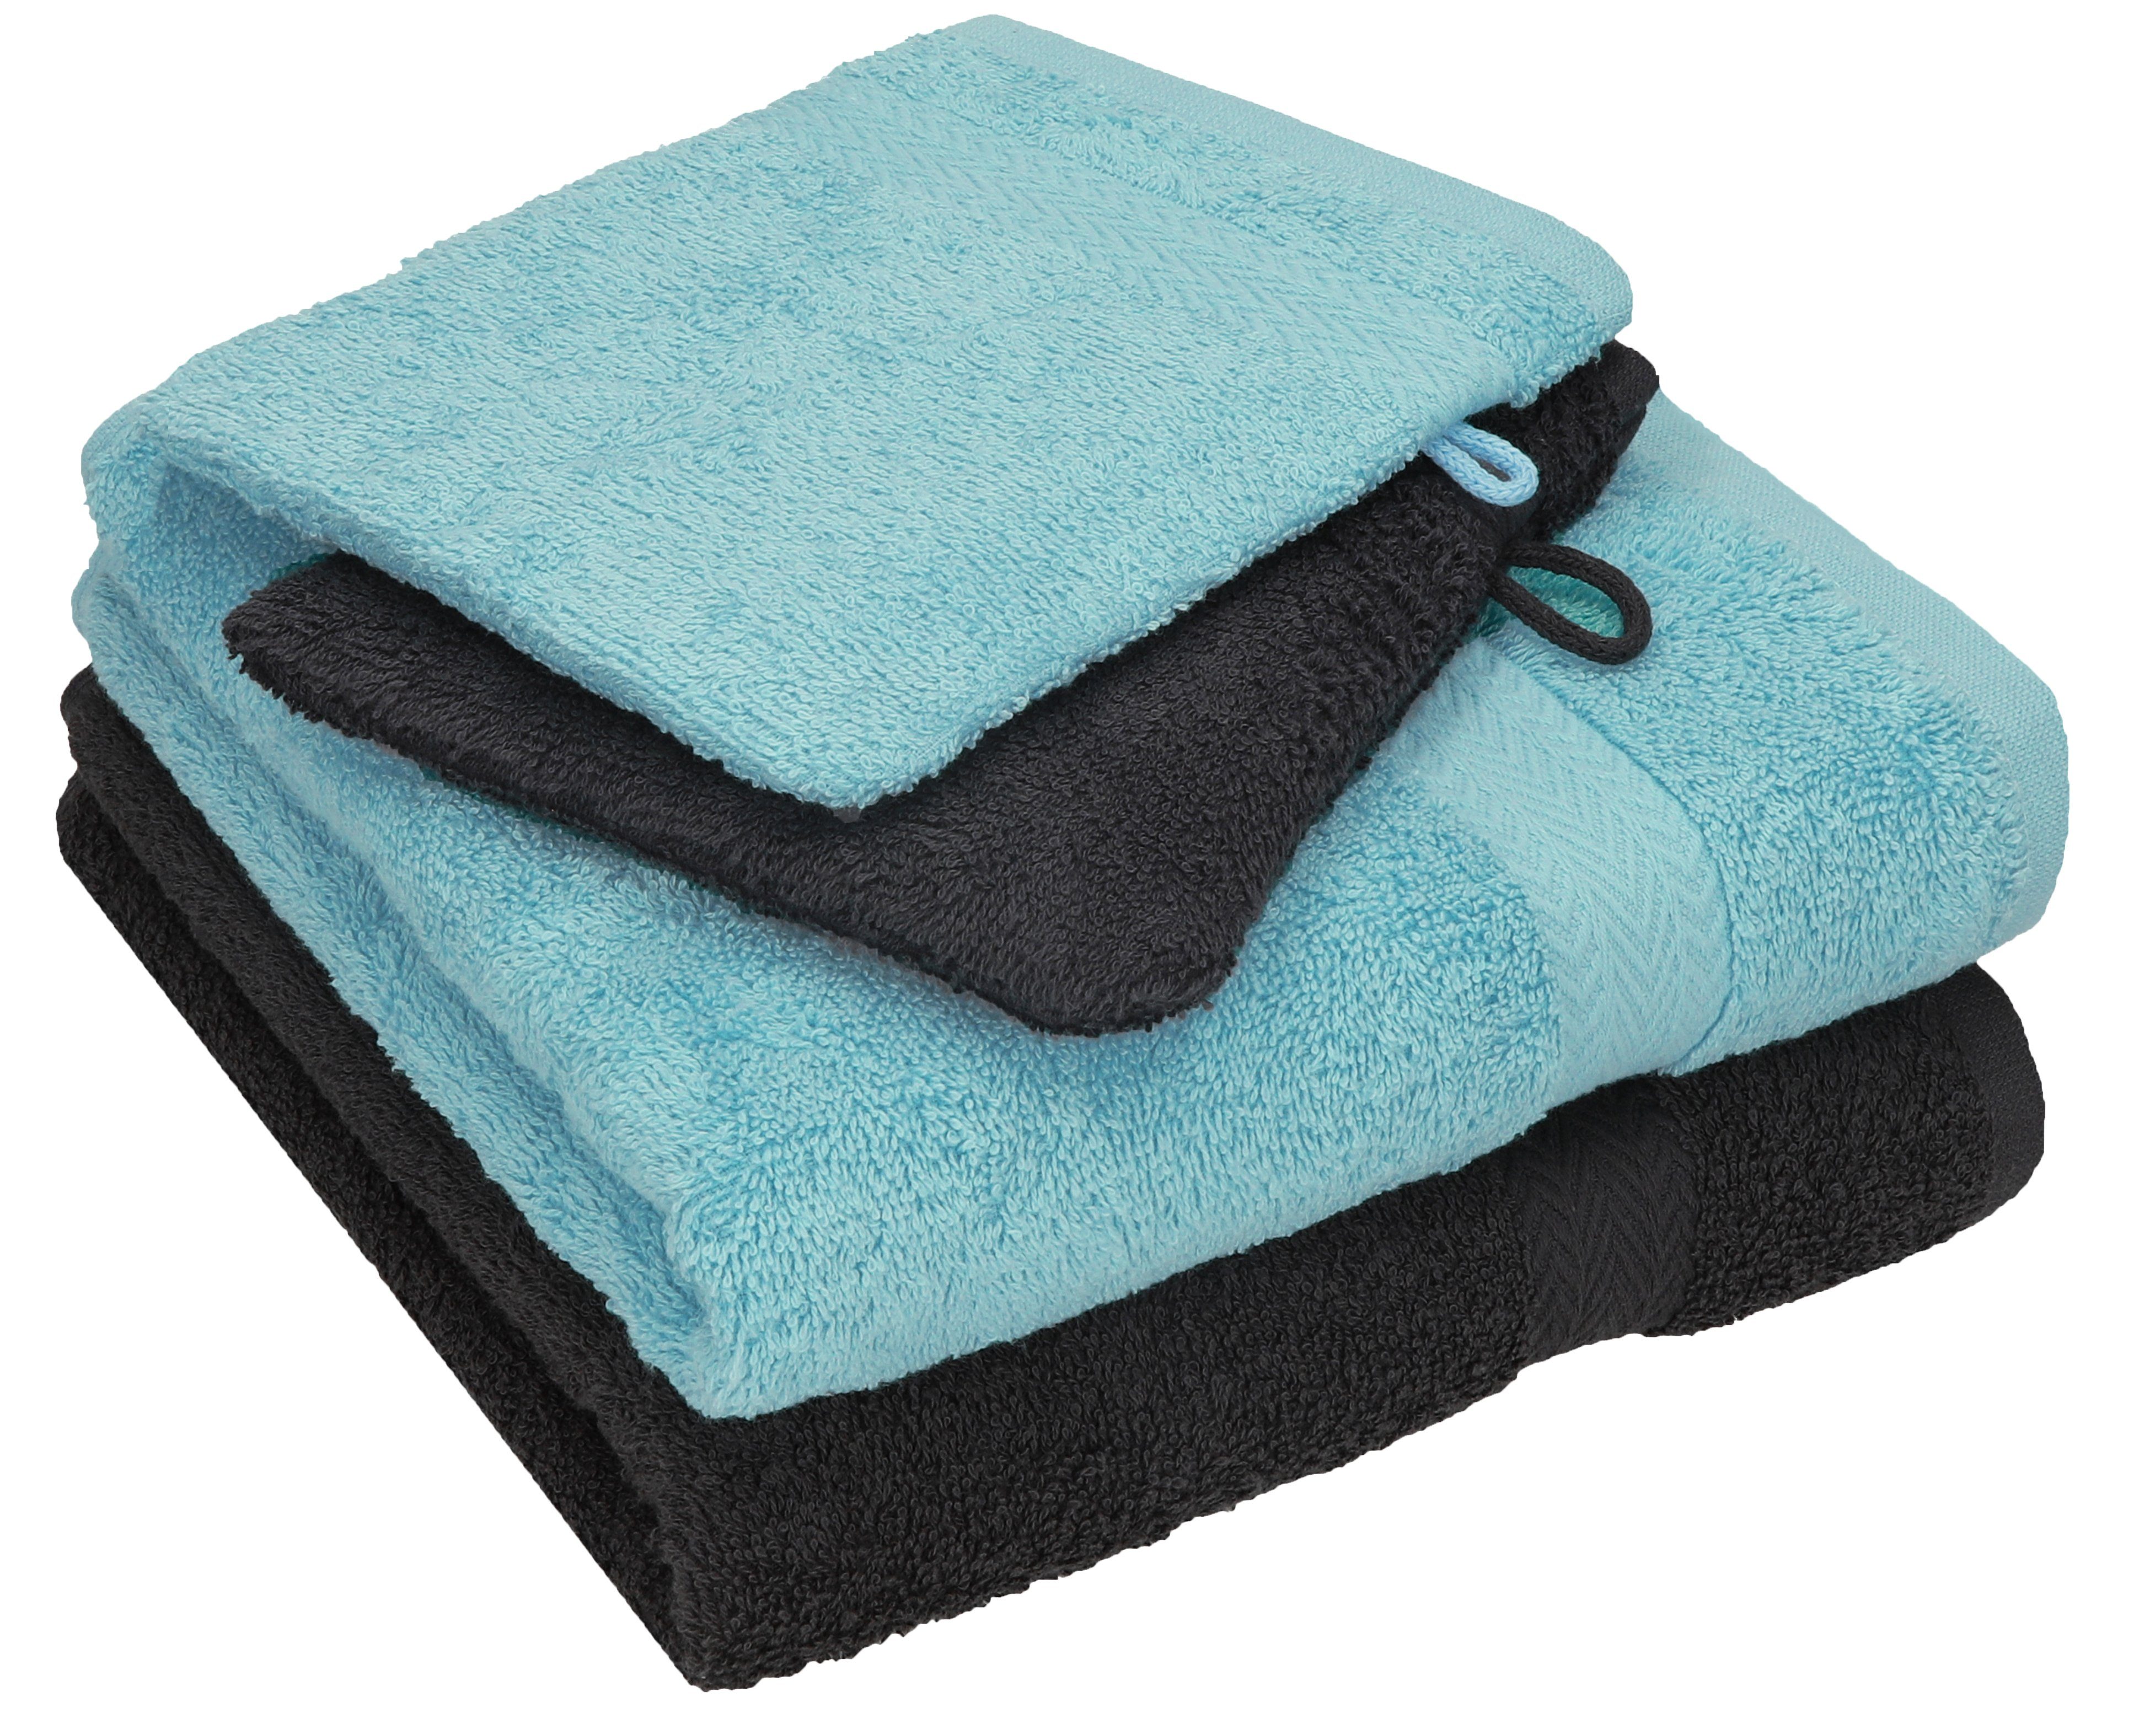 Betz Handtuch Set 4 tlg. Handtuch Set HAPPY Pack 100% Baumwolle 2 Handtücher 2 Waschhandschuhe, 100% Baumwolle graphit grau - ocean